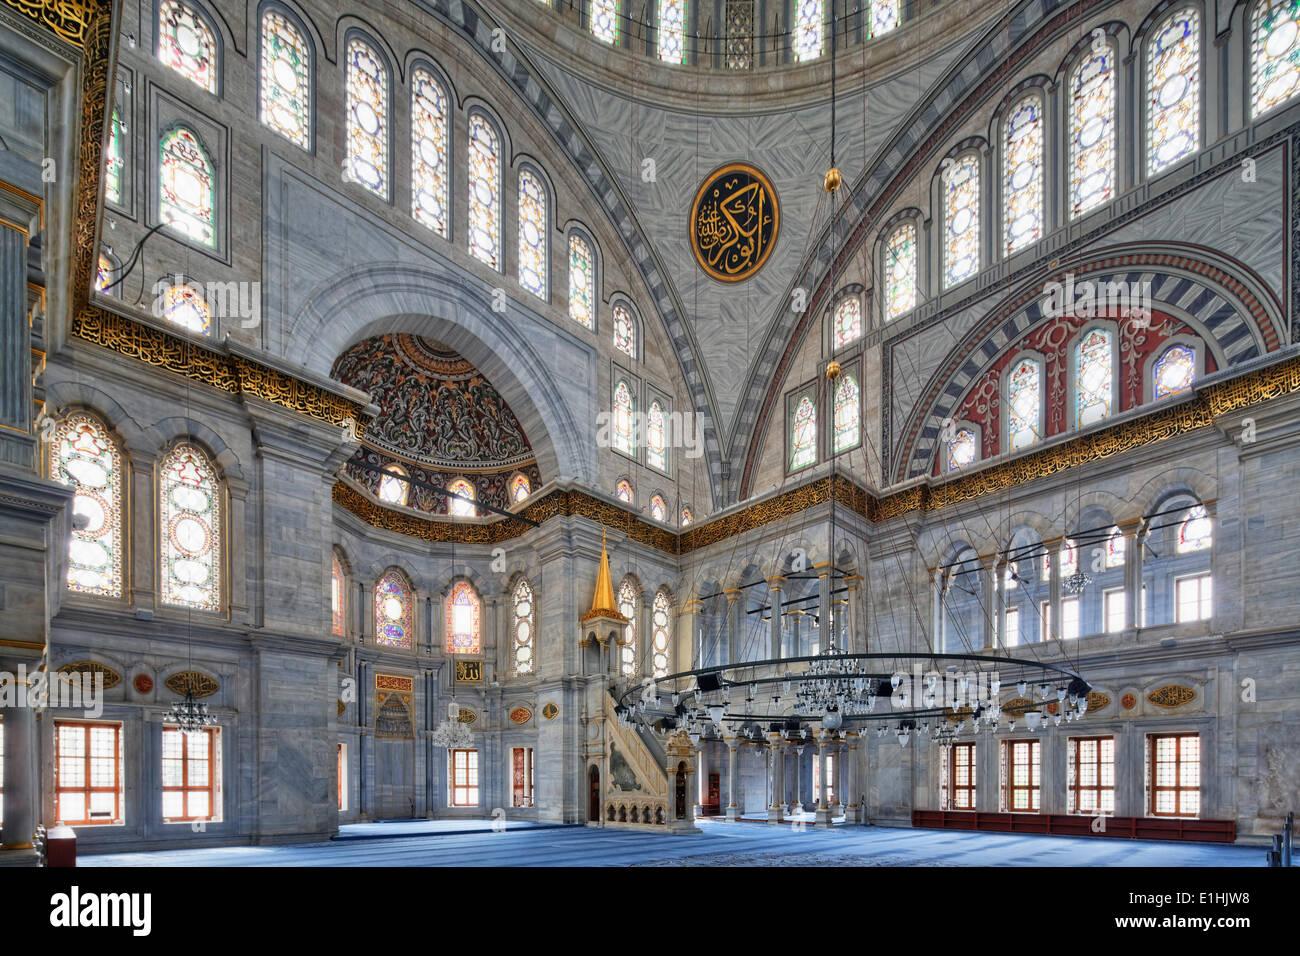 Nuruosmaniye Mosque or Nuruosmaniye Camii, Beyazit, Istanbul, European part, Turkey Stock Photo